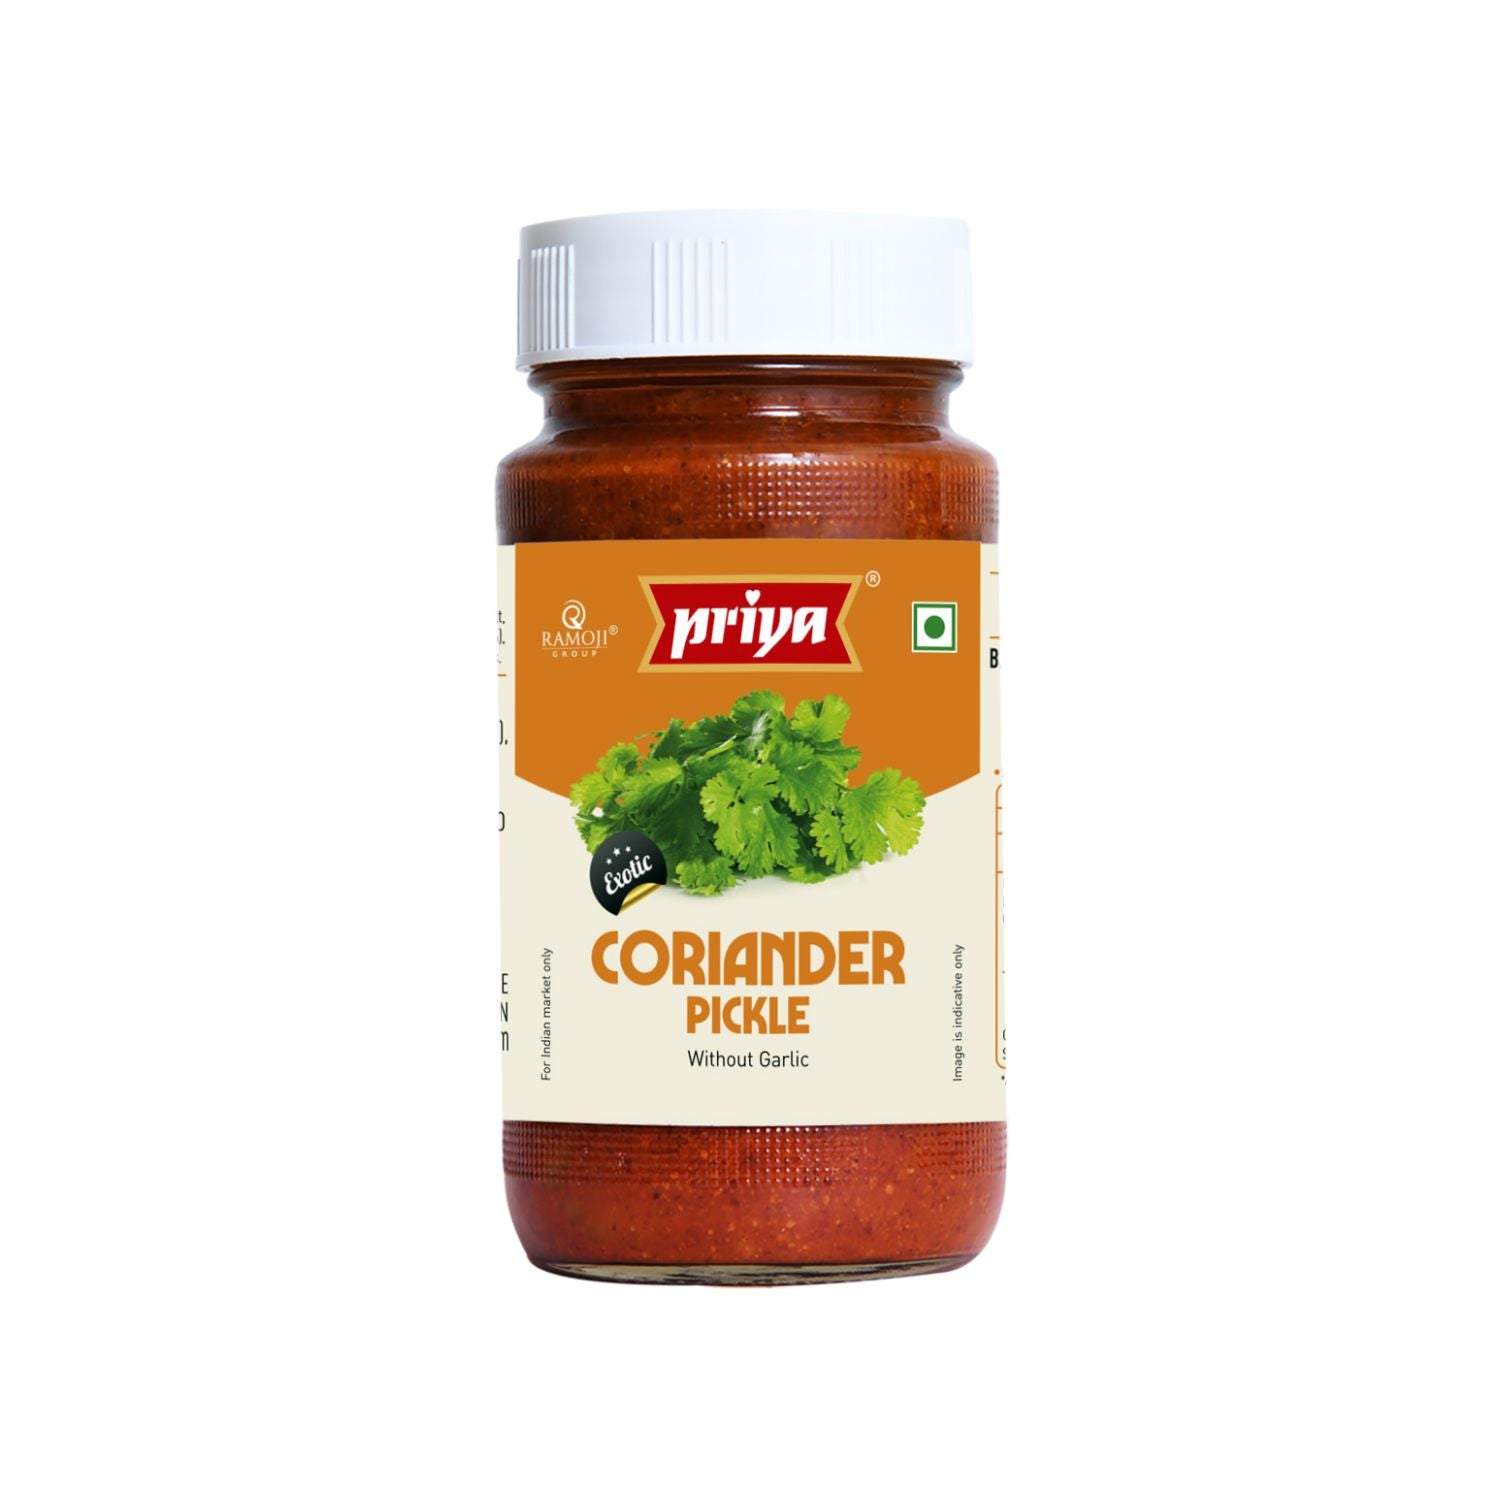 Coriander Pickle Without Garlic 300g